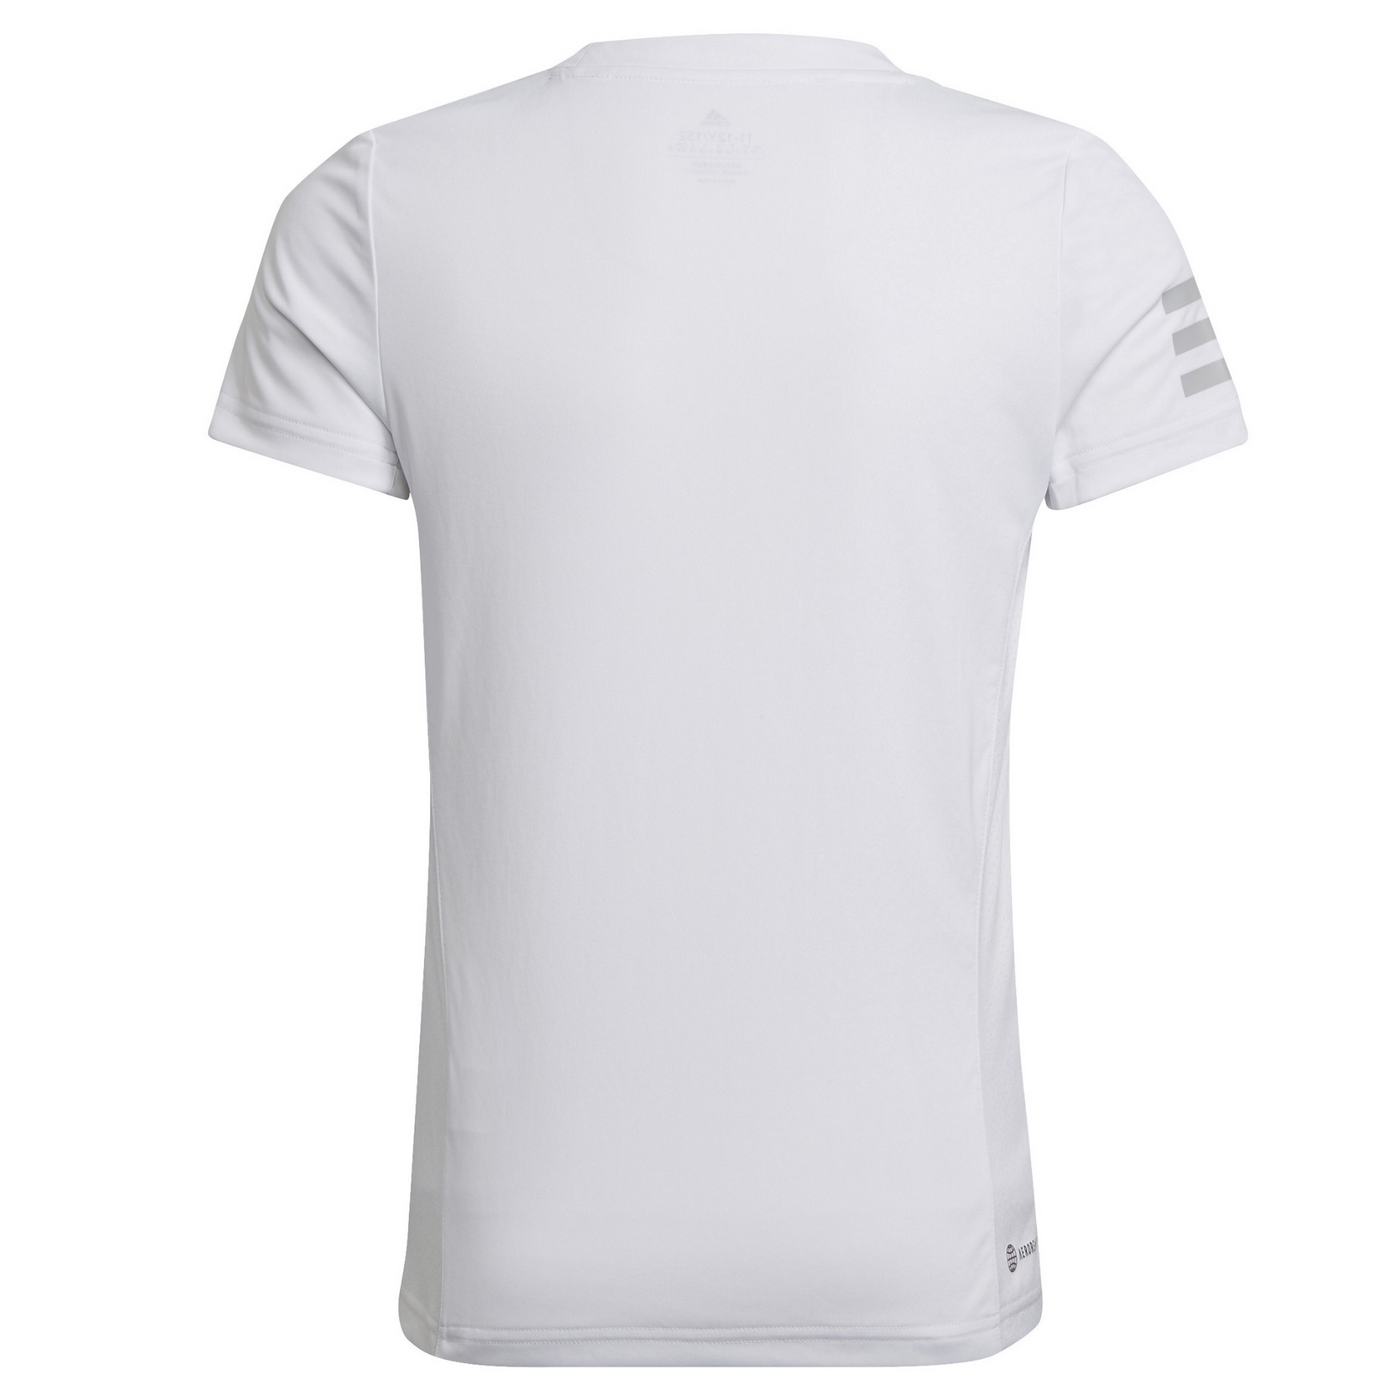 Adidas Girls Club Tee Tennis T-Shirt - White/Grey Two